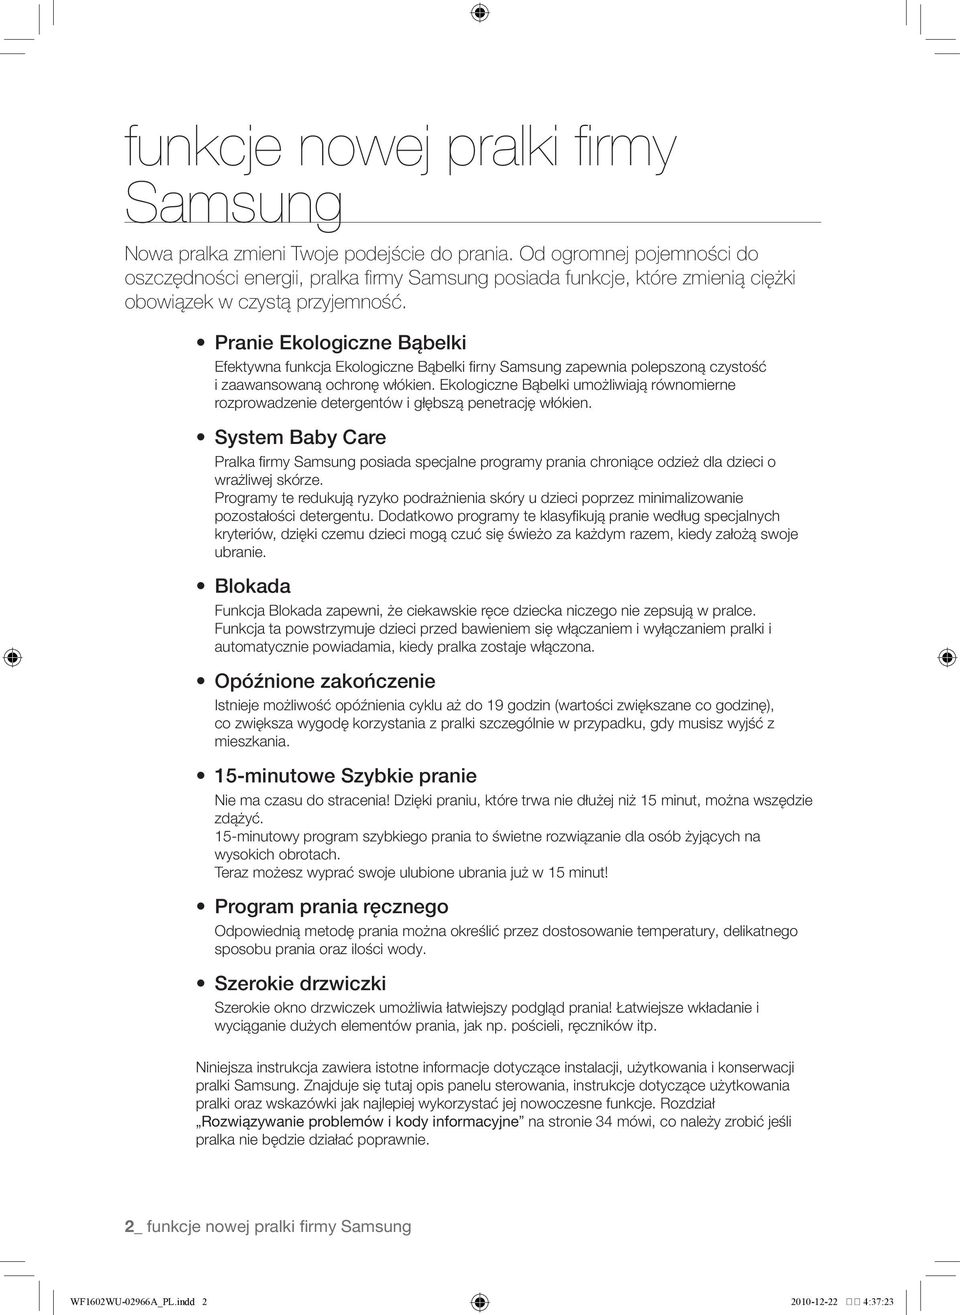 Pranie Ekologiczne Bąbelki Efektywna funkcja Ekologiczne Bąbelki firny Samsung zapewnia polepszoną czystość i zaawansowaną ochronę włókien.